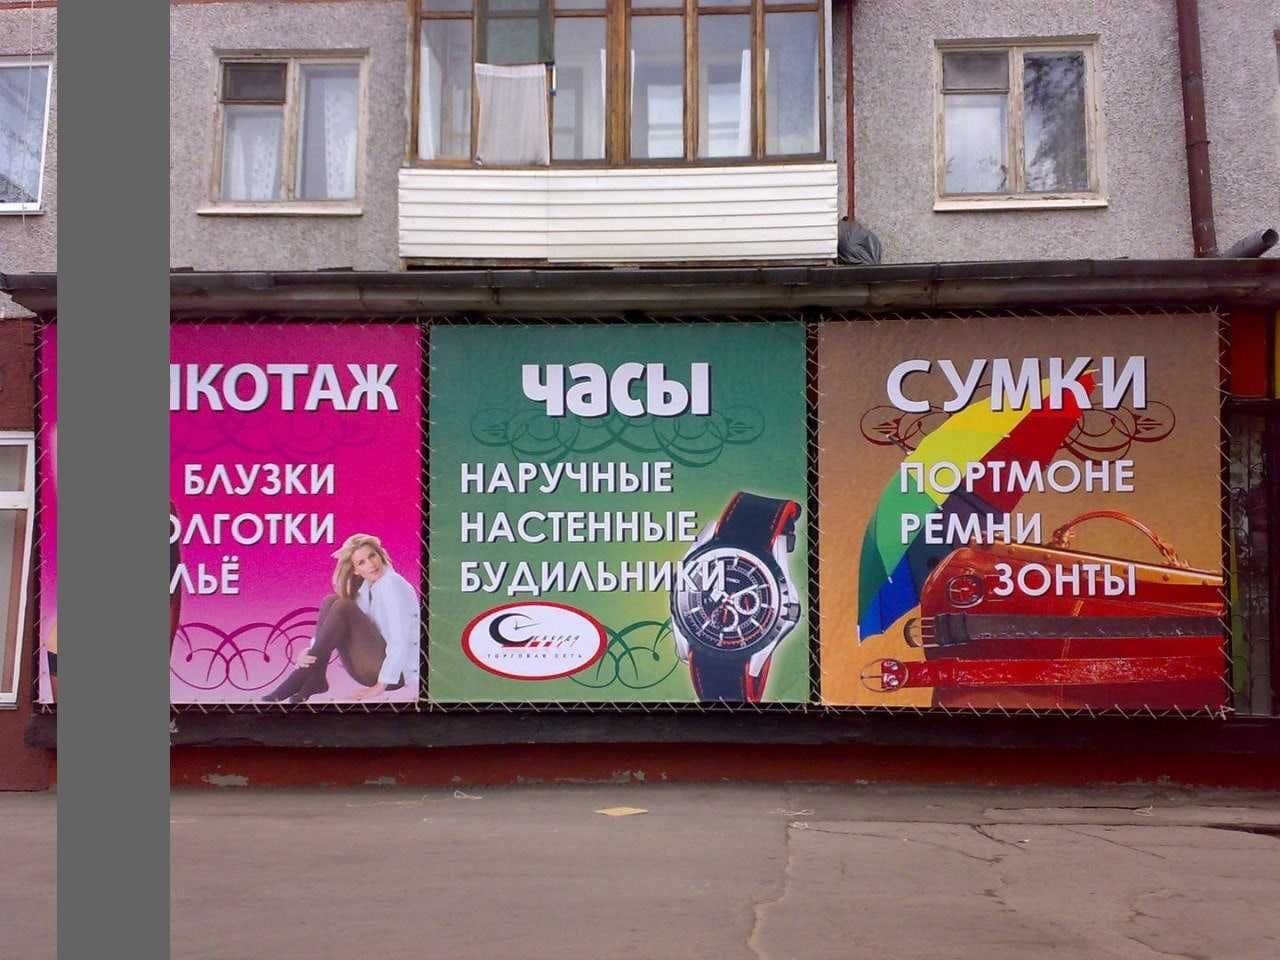 Печать баннера 1000т м 2. Самая низкая цена в Алматы.